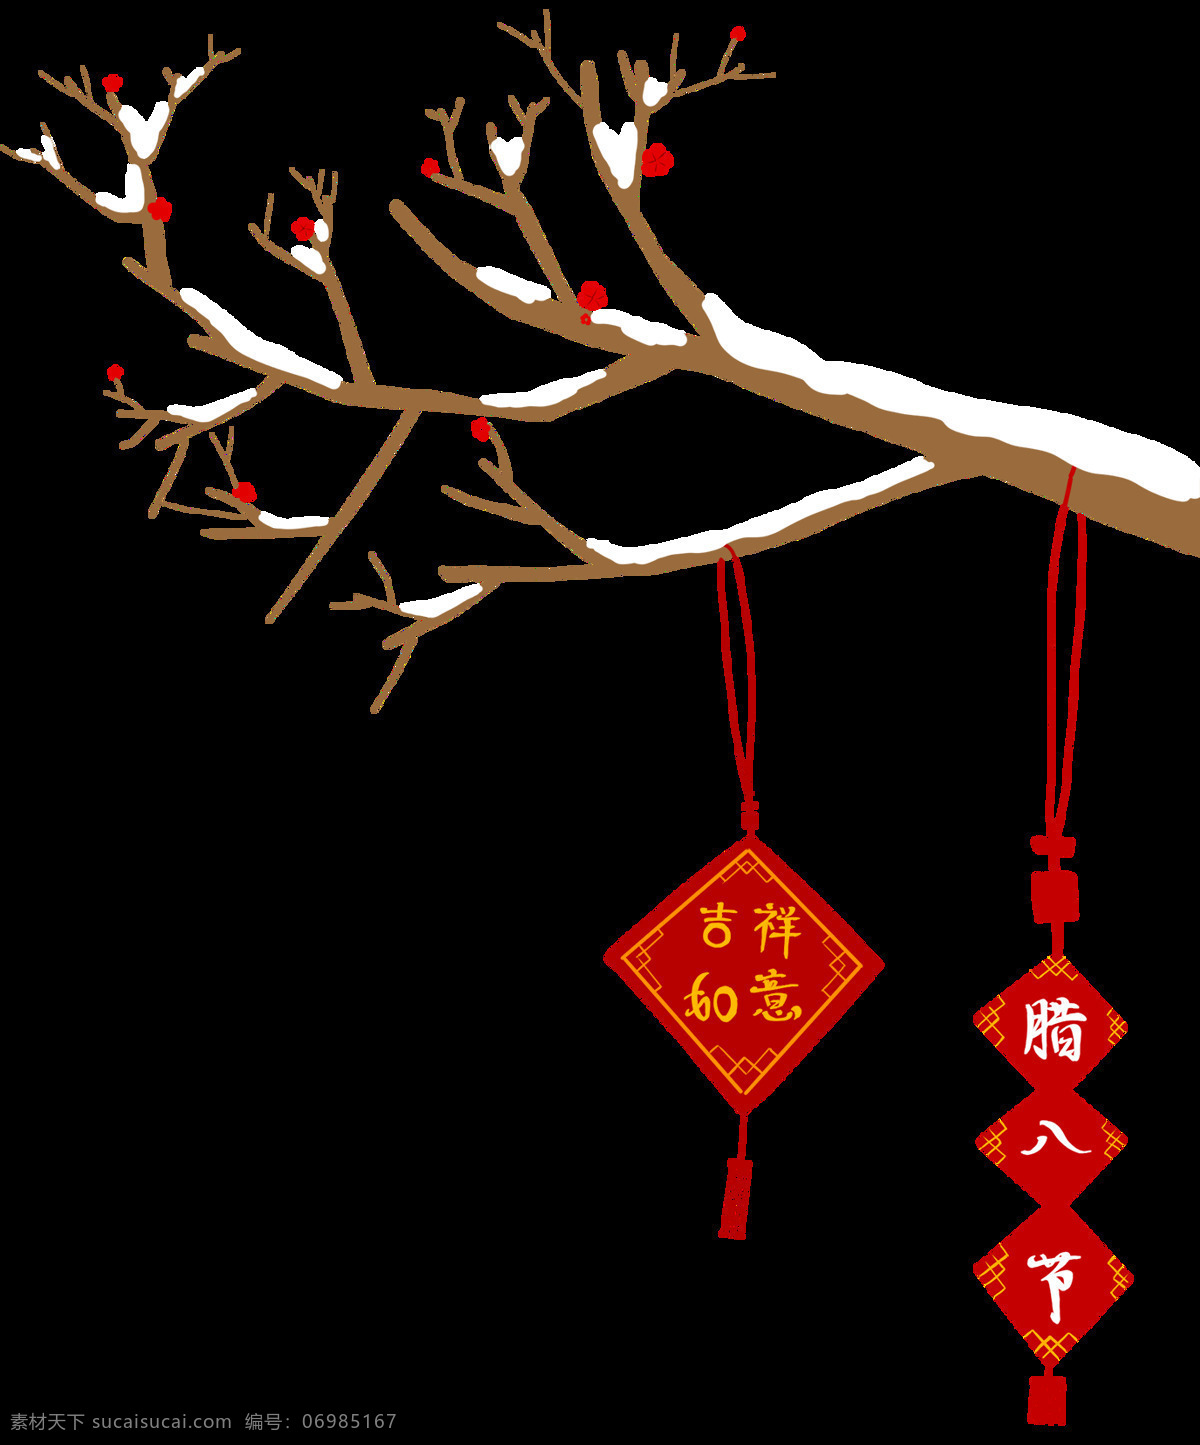 腊八节 吉祥如意 传统节日 腊八饭 元素 腊八粥 年货节 中国风